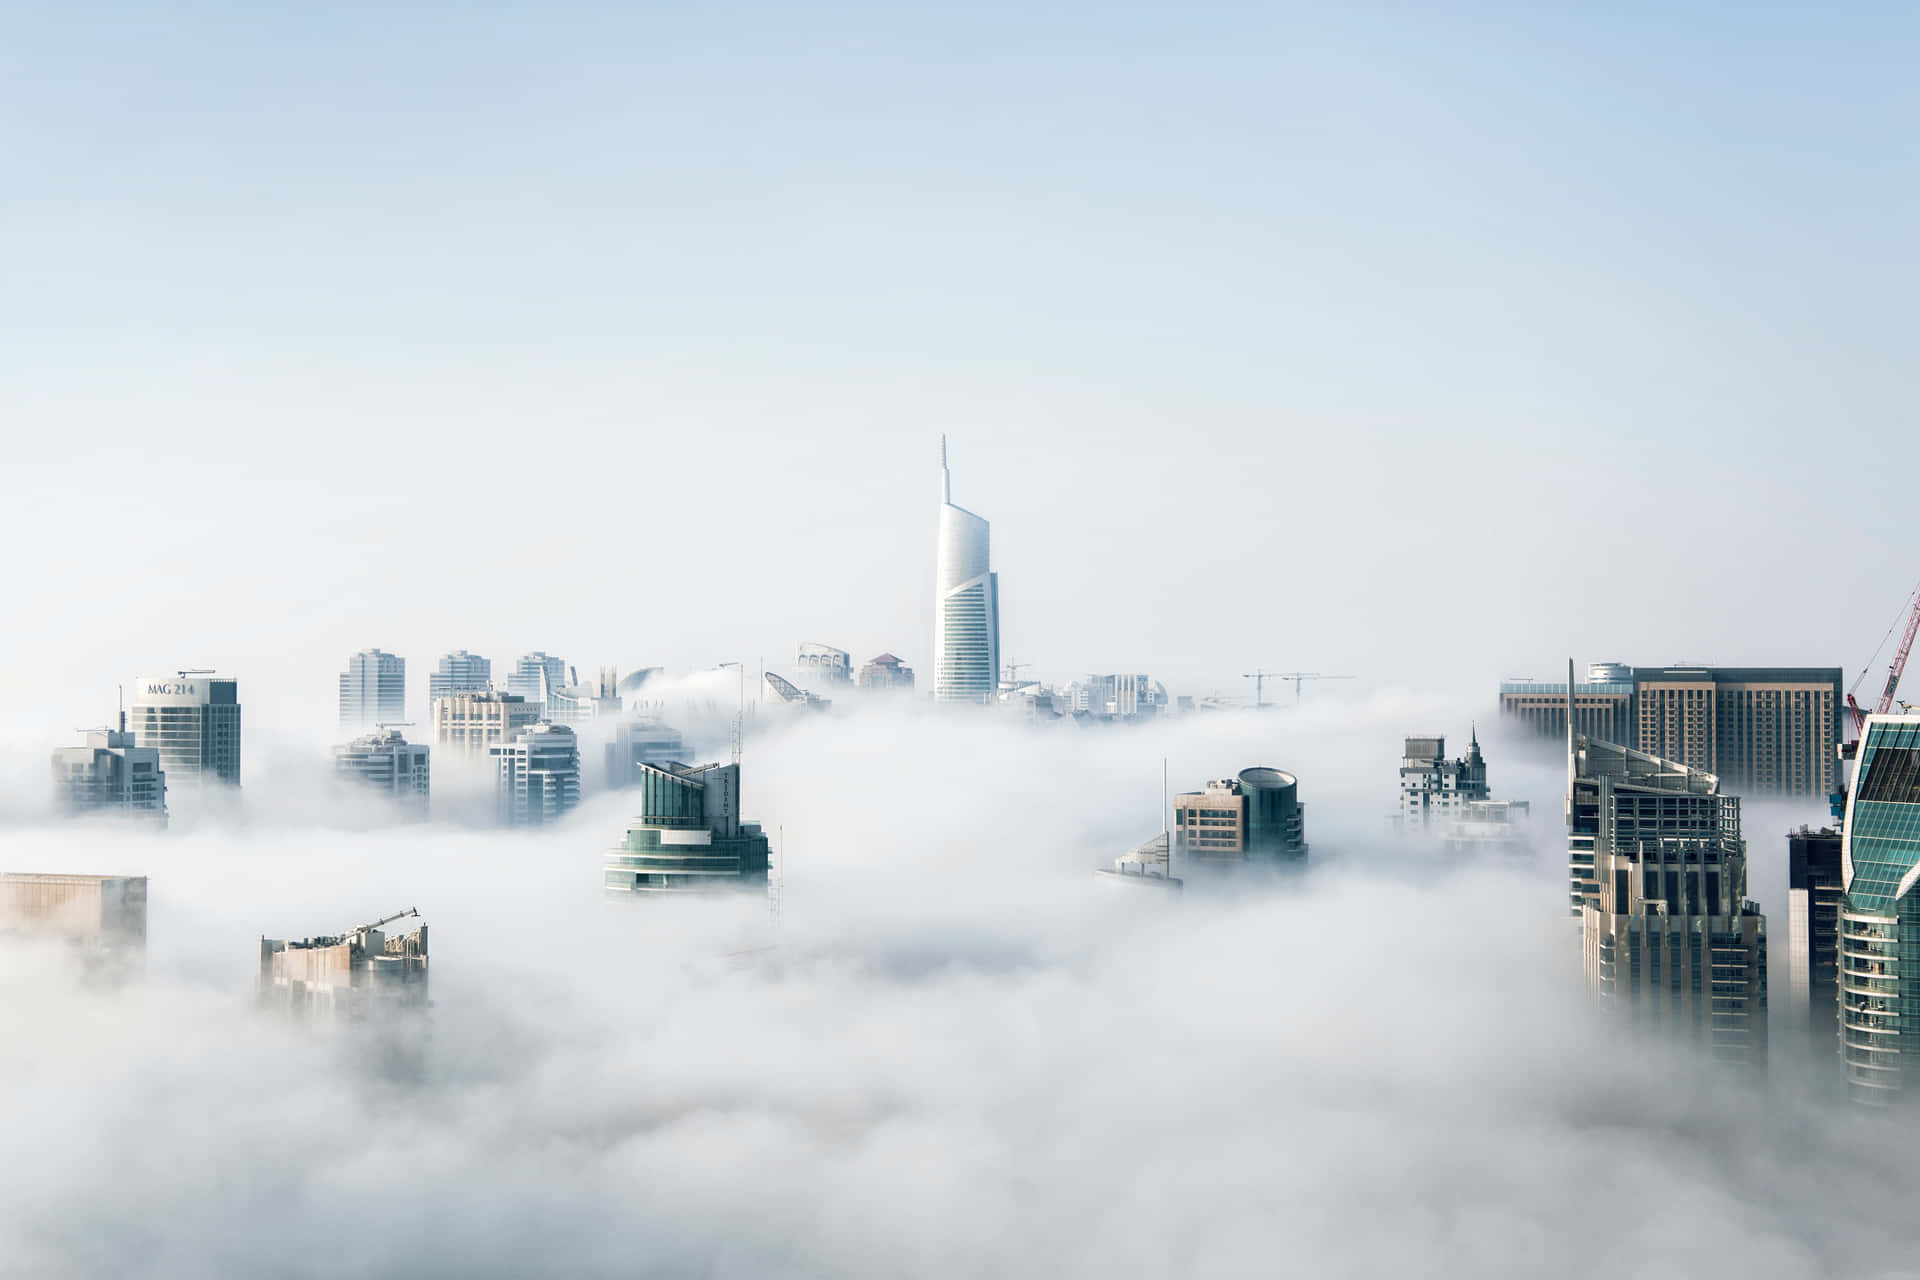 Et by dækket af skyer med høje bygninger. Wallpaper